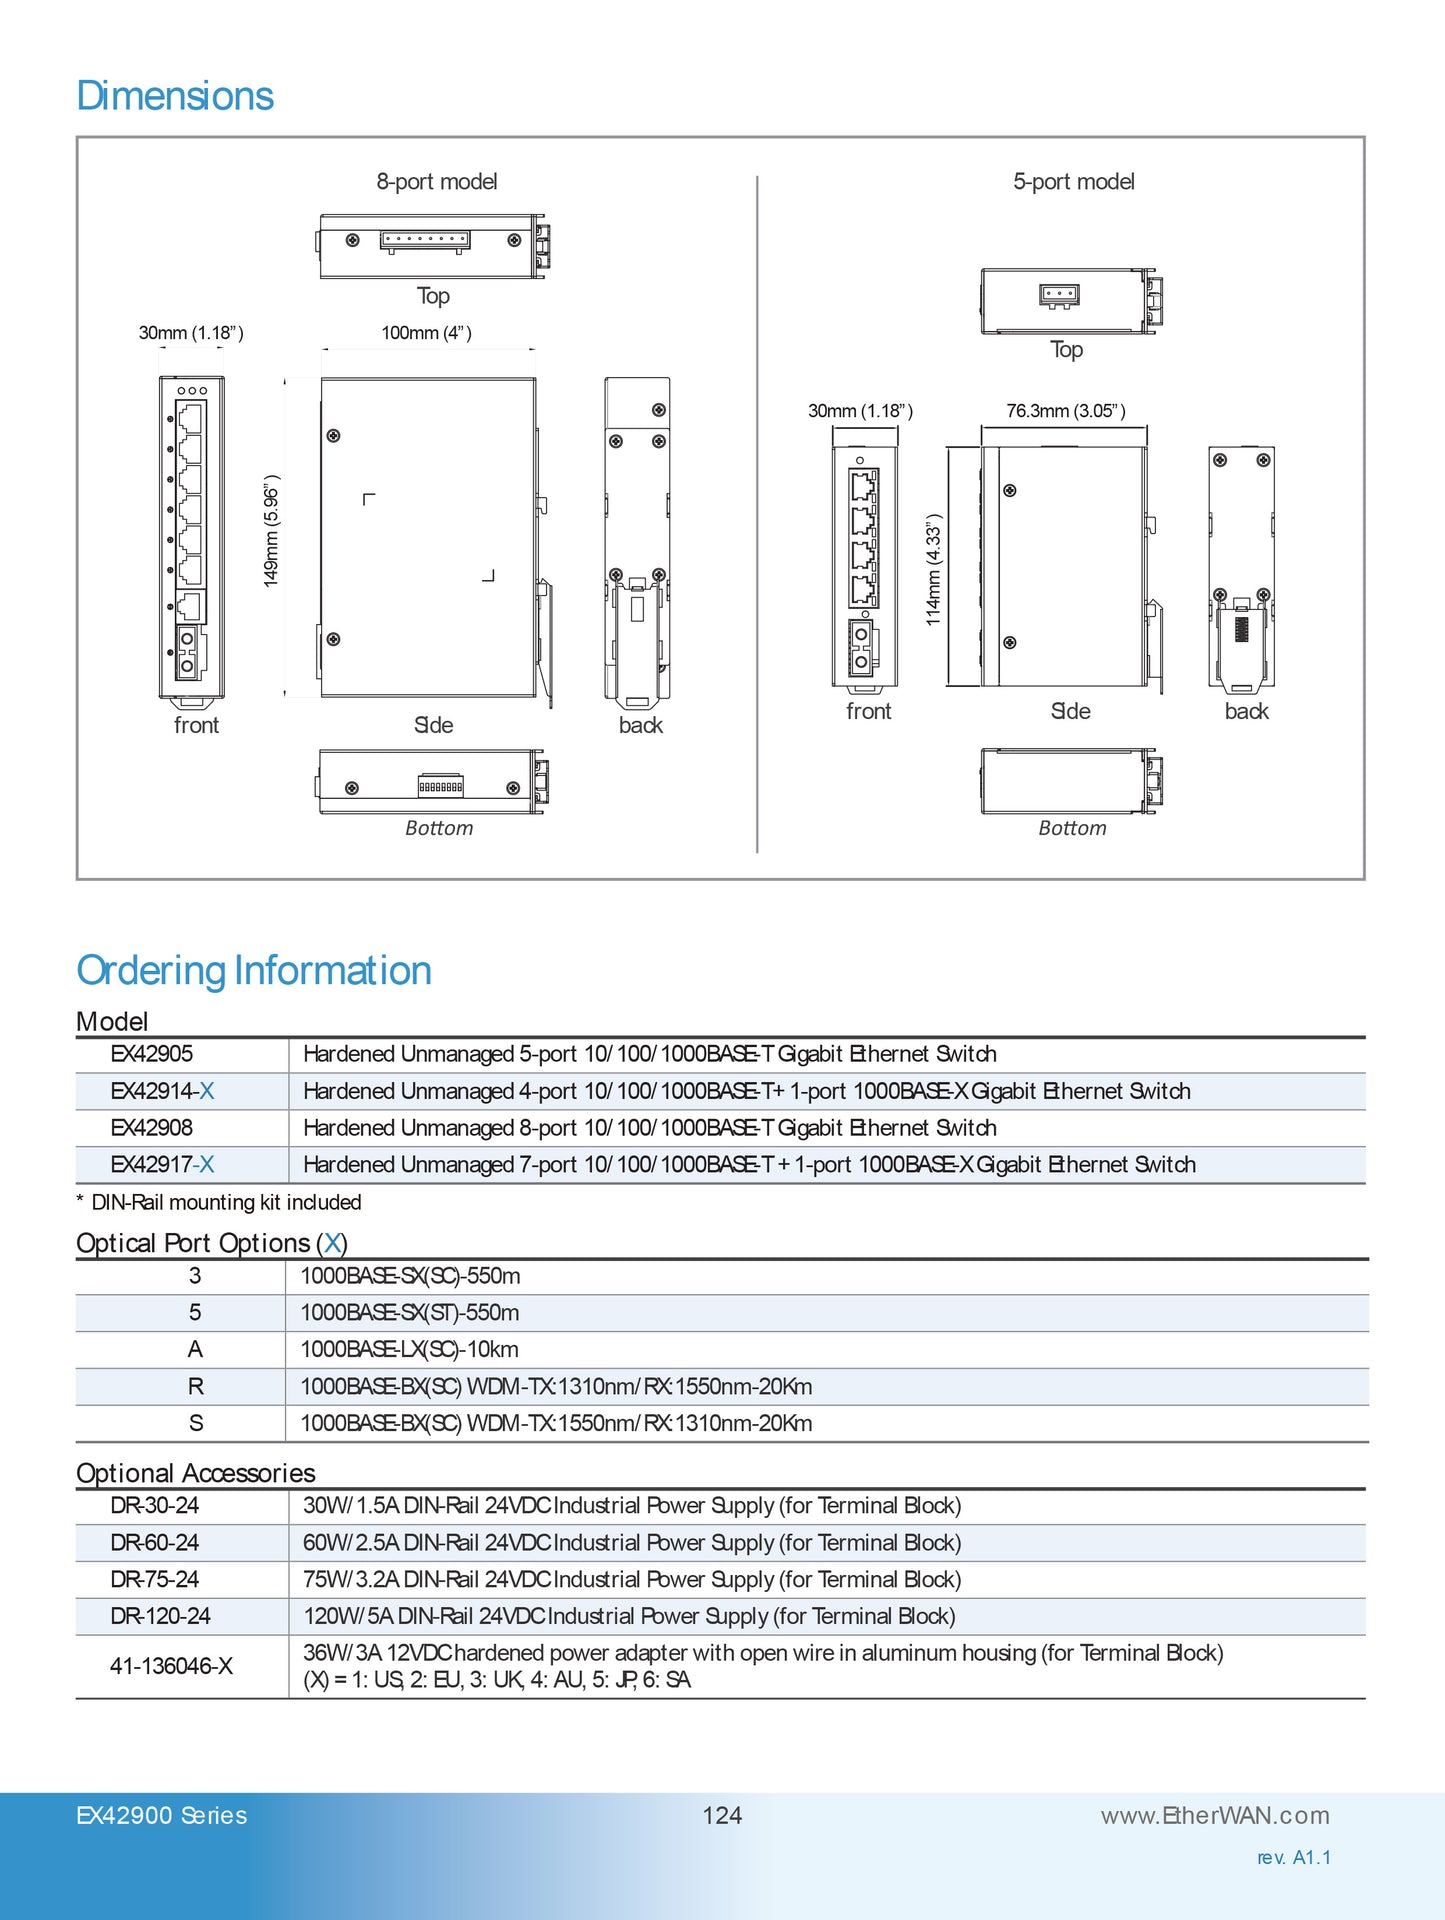 EX42917-5 - Hardened Unmanaged Gigabit Ethernet Switch (7-port 10/100/1000BASE-T +1-port 1000BASE-SX (ST) - 550m